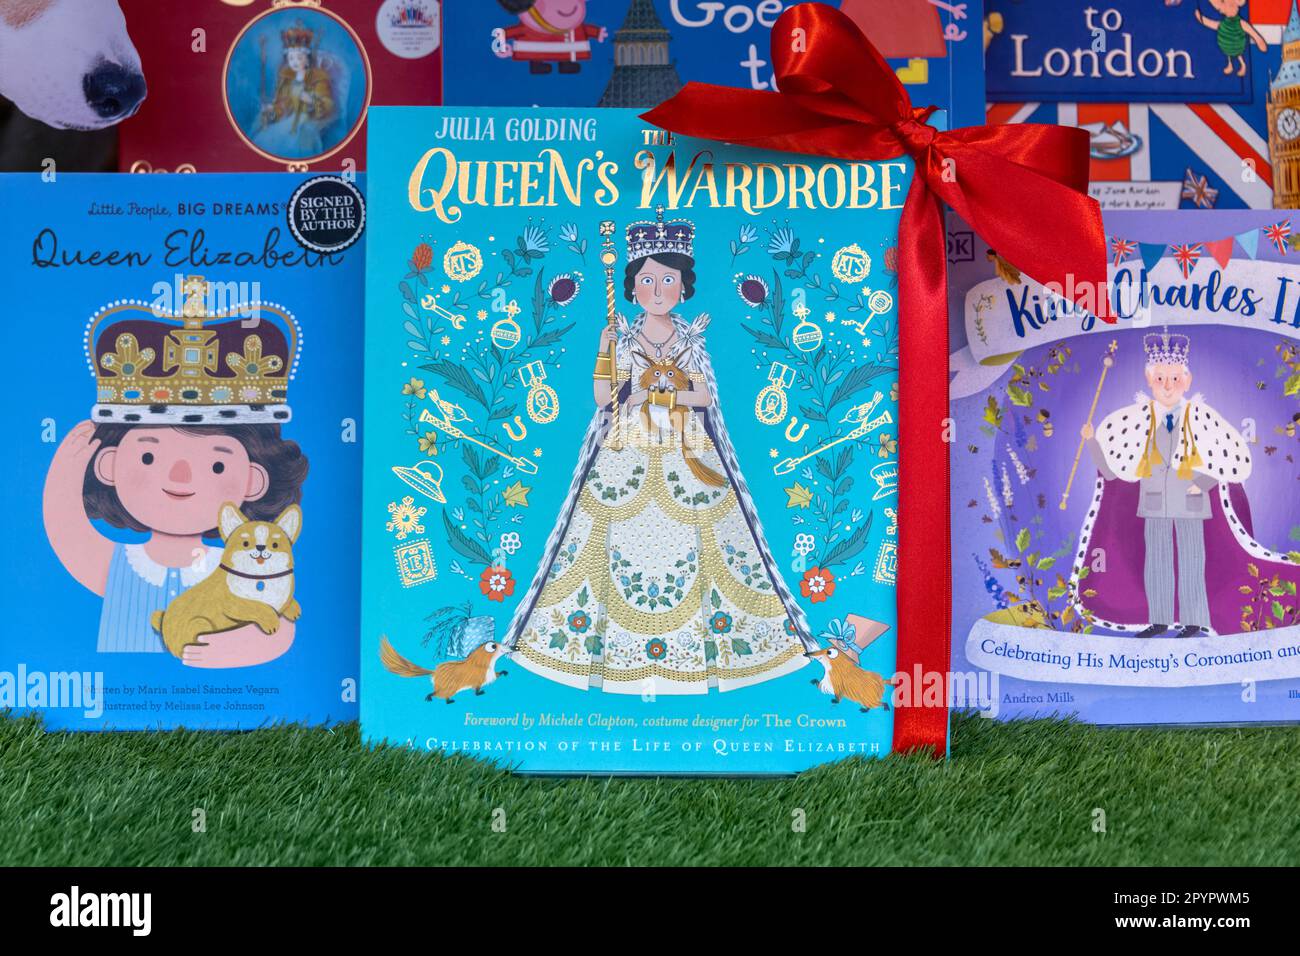 Preparativi e libri su Re Carlo III e la Famiglia reale nella finestra di Waterstones Piccadilly, Londra Foto Stock